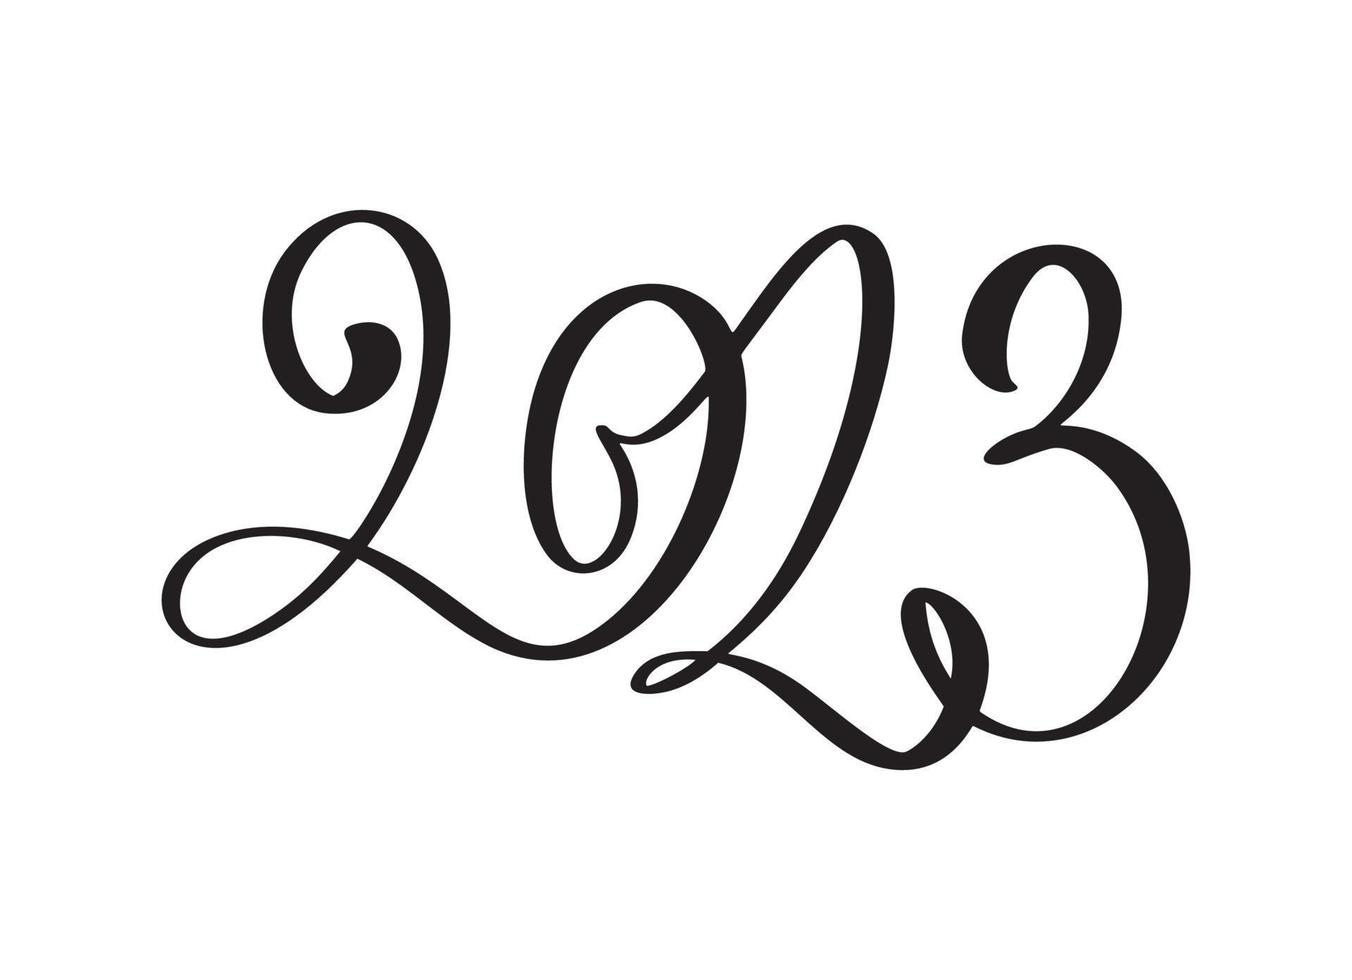 felice anno nuovo 2023 disegno di testo vettoriale. copertina del diario aziendale per il modello di progettazione 2023, illustrazione del banner della carta isolata su sfondo bianco vettore